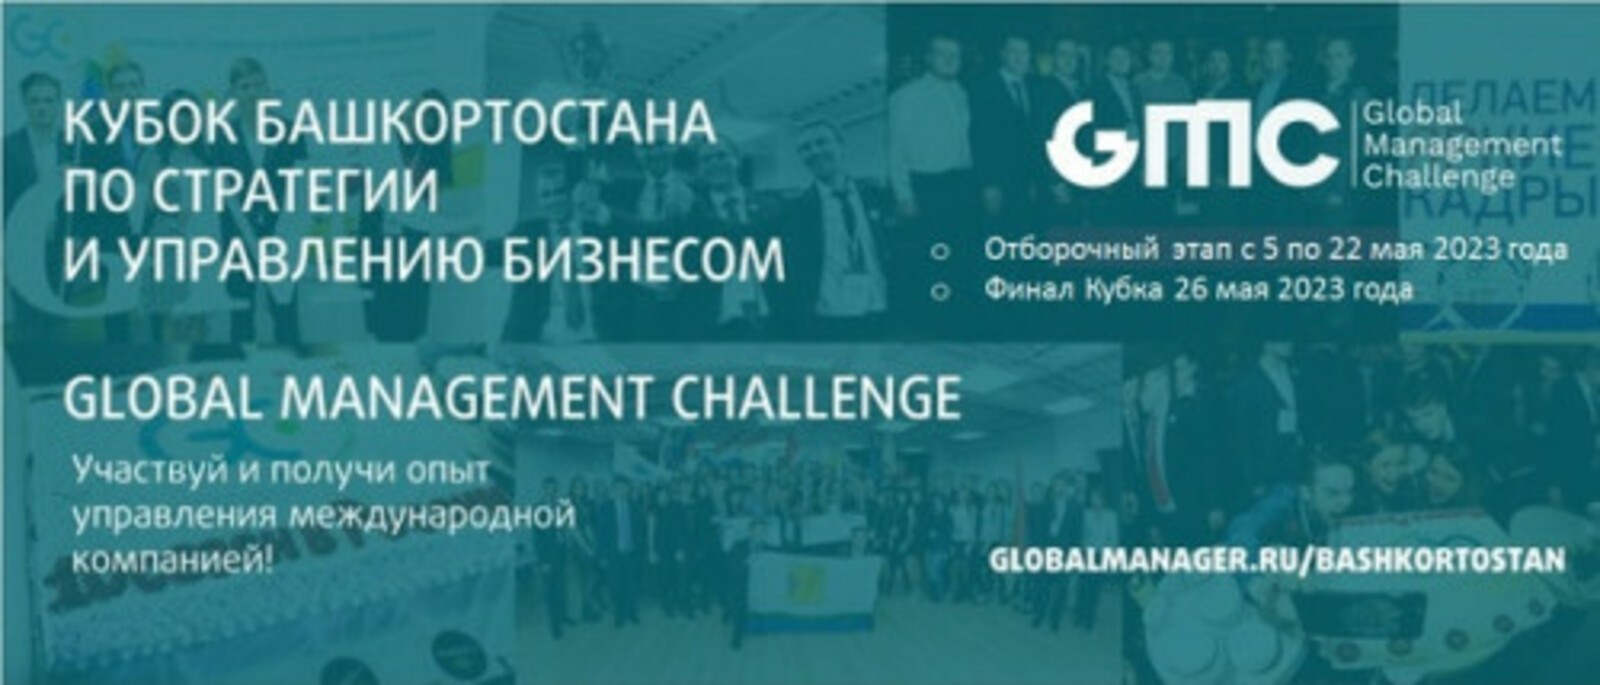 В рамках Всероссийского инвестиционного сабантуя «Зауралье-2023» состоится финал Кубка Башкортостана по стратегии и управлению бизнесом